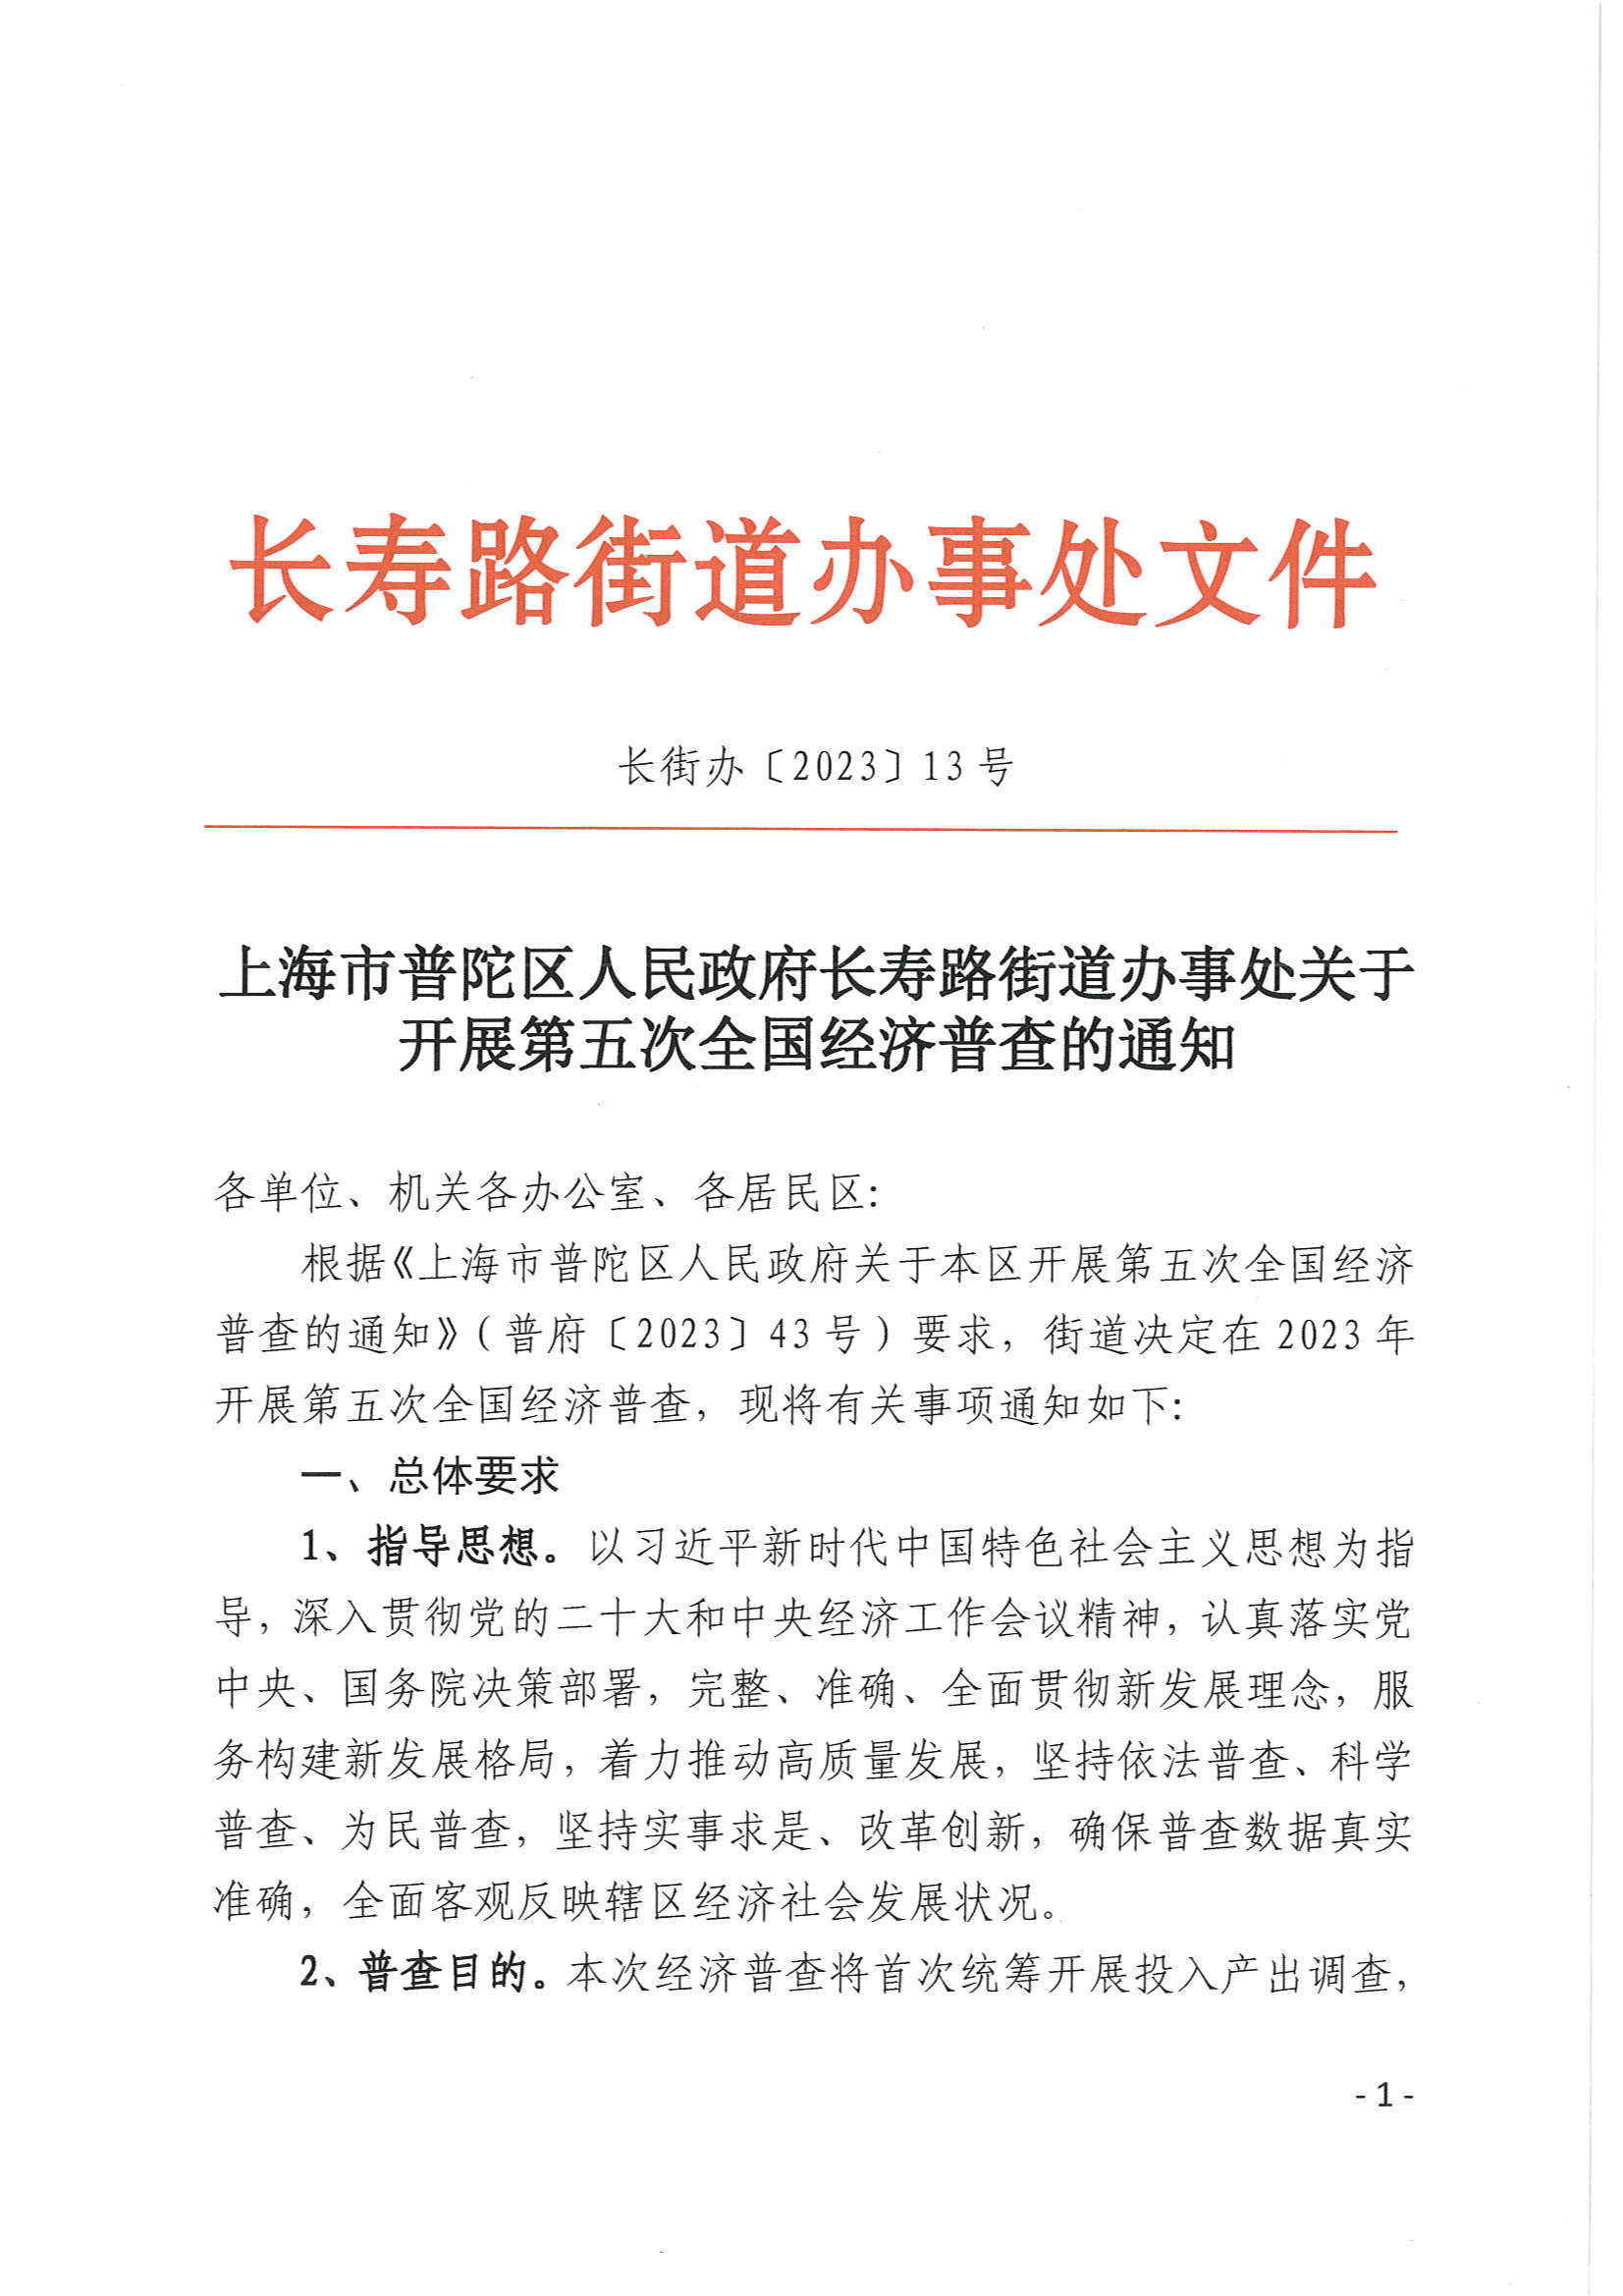 上海市普陀区人民政府长寿路街道办事处关于开展第五次全国经济普查的通知